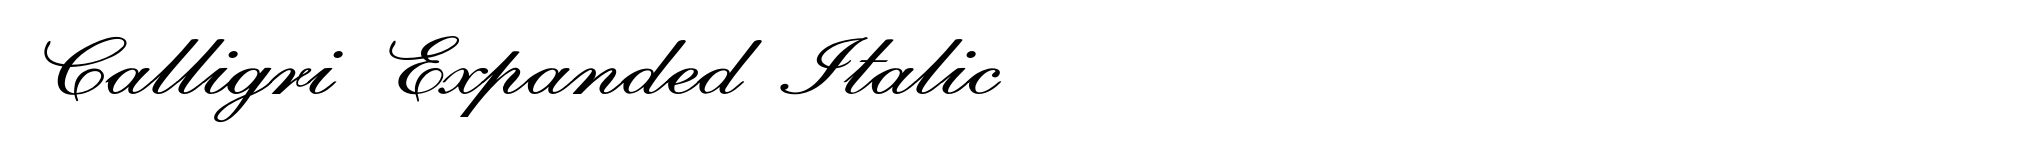 Calligri Expanded Italic image